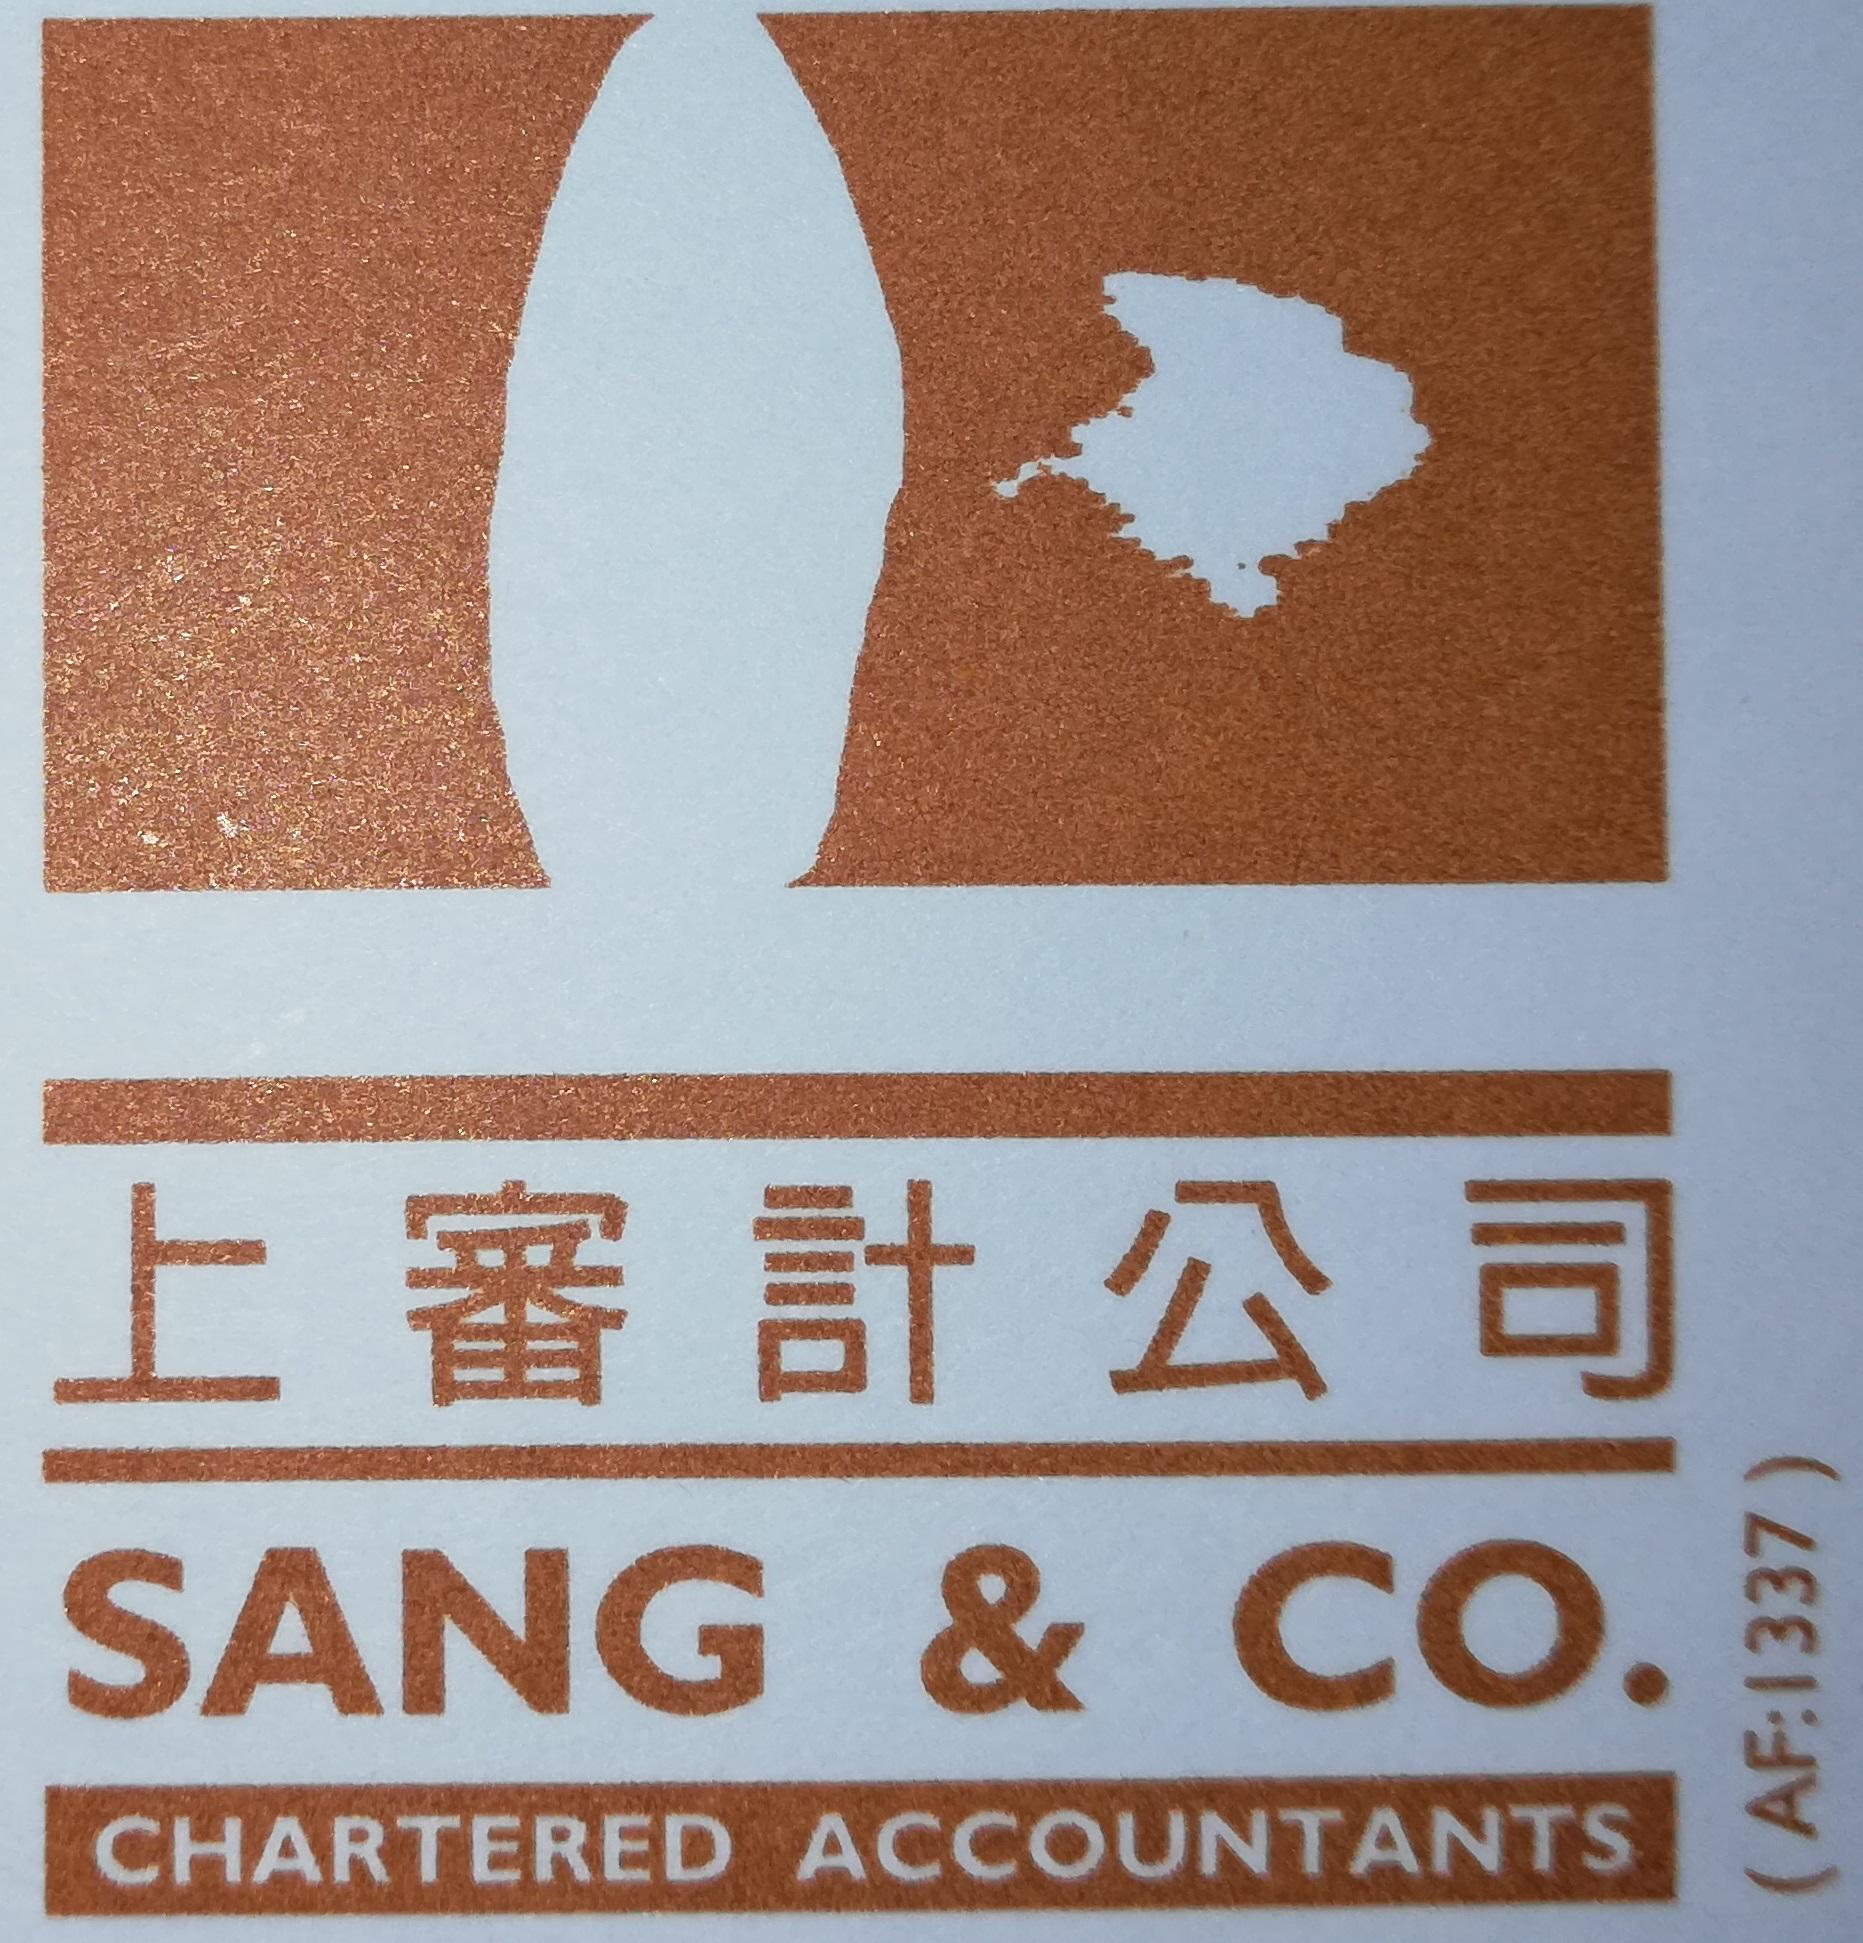 Sang & Co